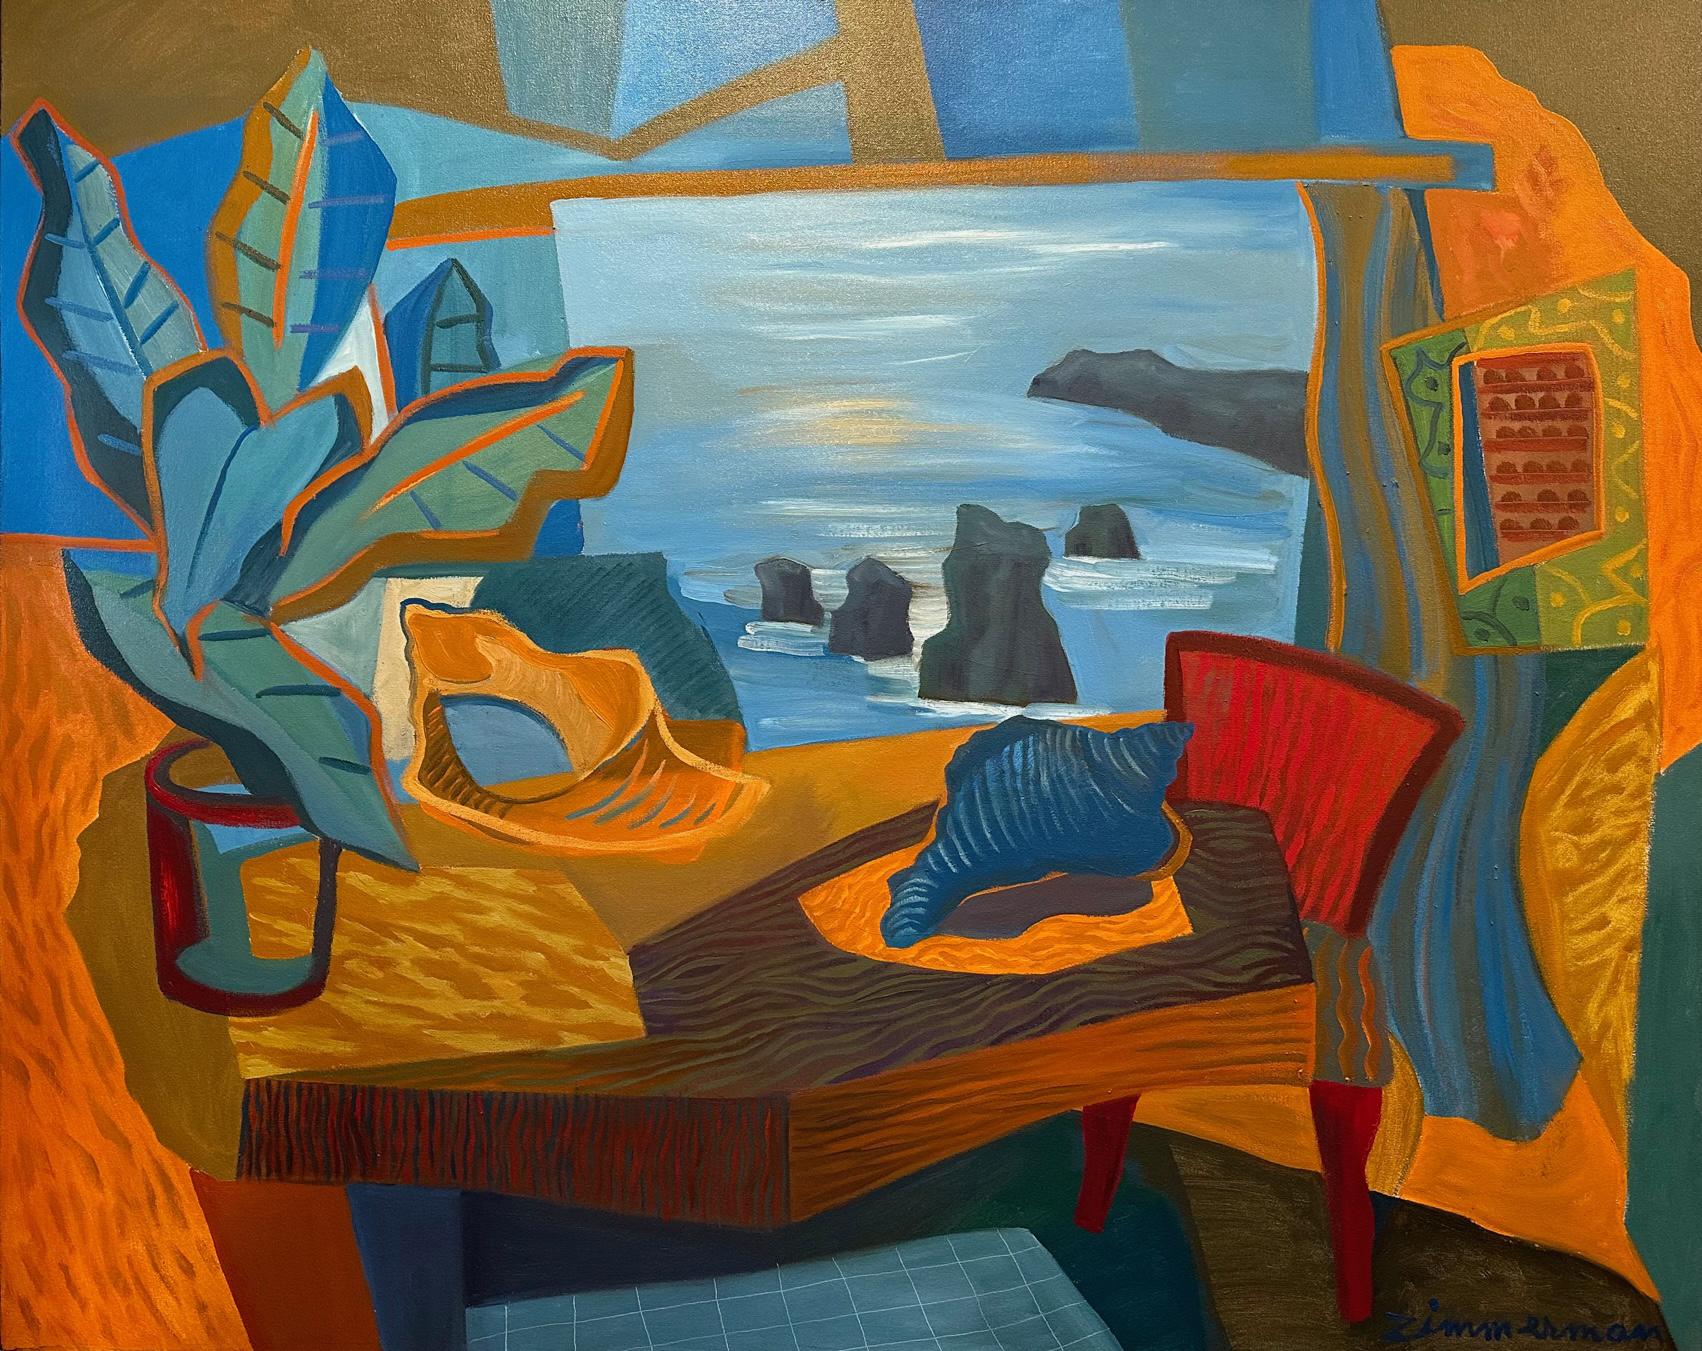 'View Through To The Sea', Öl auf Leinwand, wird in der Zimmerman Gallery, Carmel, CA ausgestellt


Marc Zimmerman schafft verspielte Gemälde, ob tiefgründiger, geheimnisvoller Dschungel oder herrlich skurrile Blumen. Seine Farbpalette erkundet